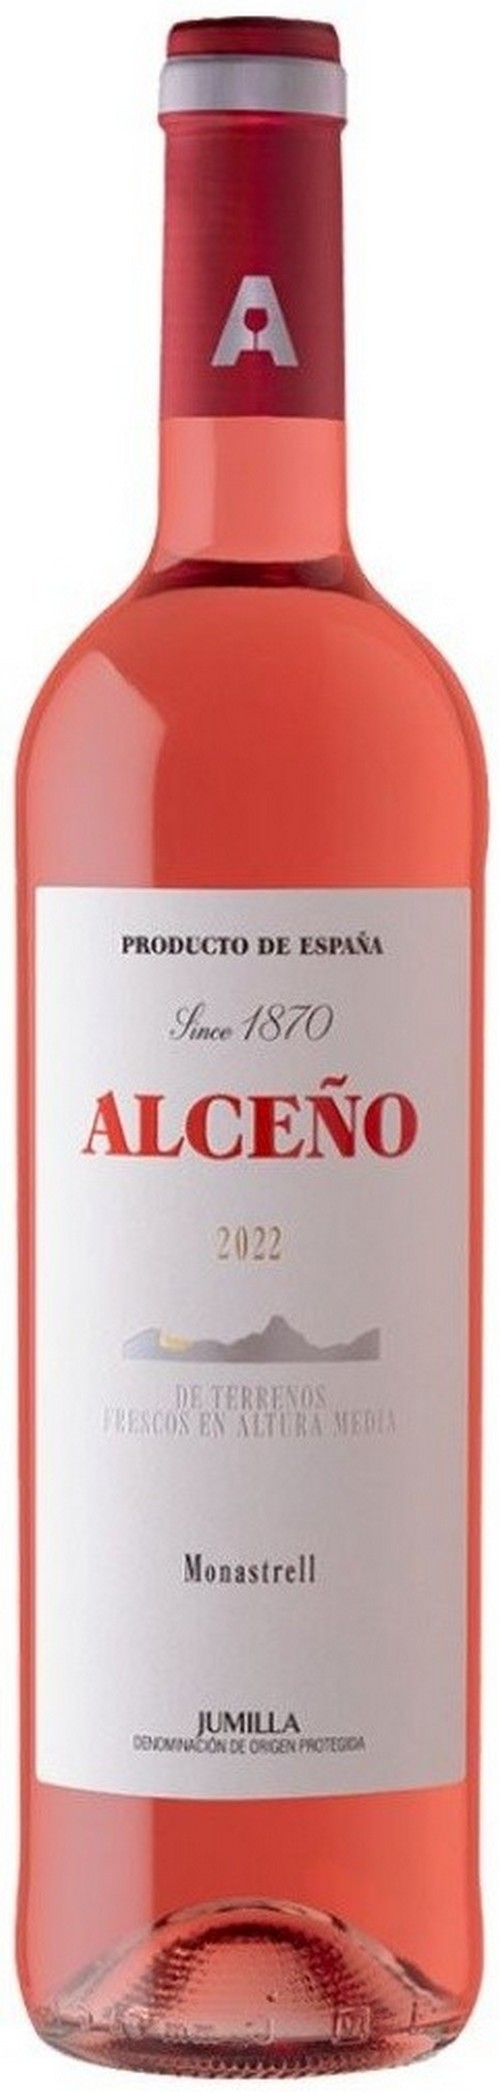 alceno-rosado-monastrell-2022